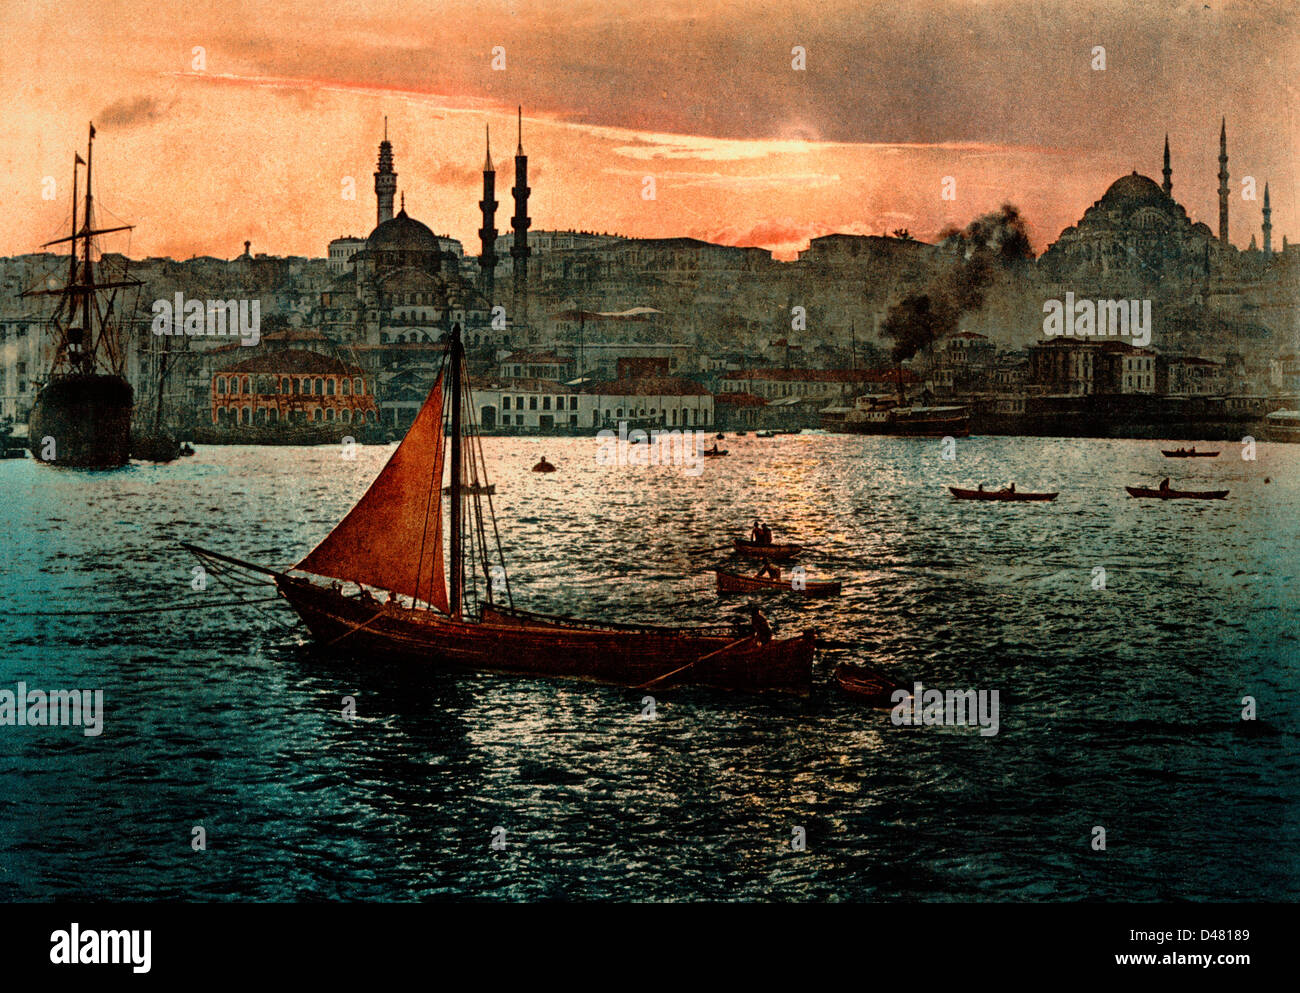 Stamboul, Constantinopla, Turquía, circa 1900 Foto de stock